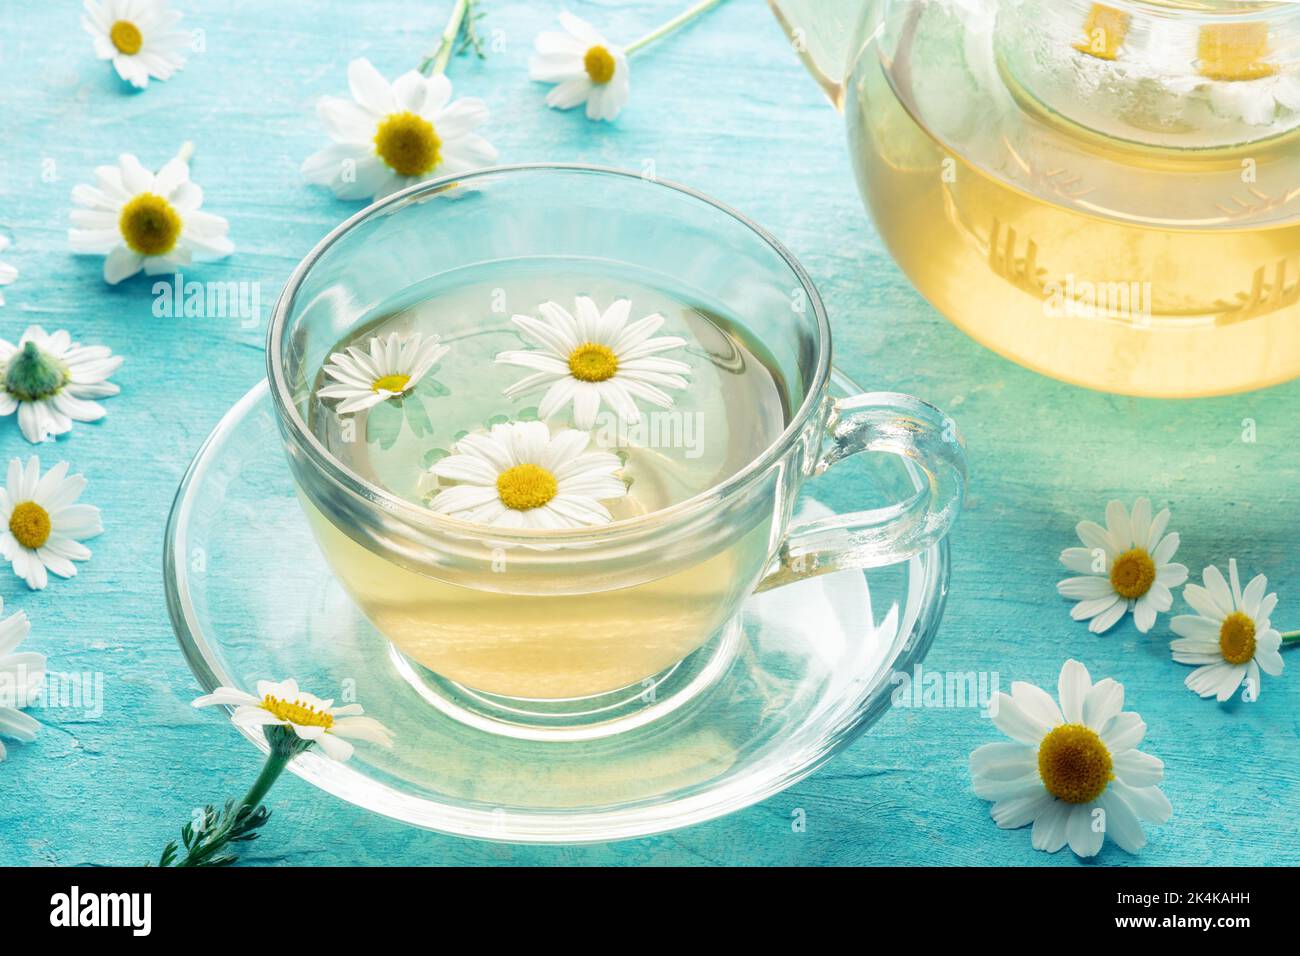 Thé de camomille dans une tasse avec une théière, une infusion de plantes pour se détendre, fleurs organiques sur fond bleu Banque D'Images